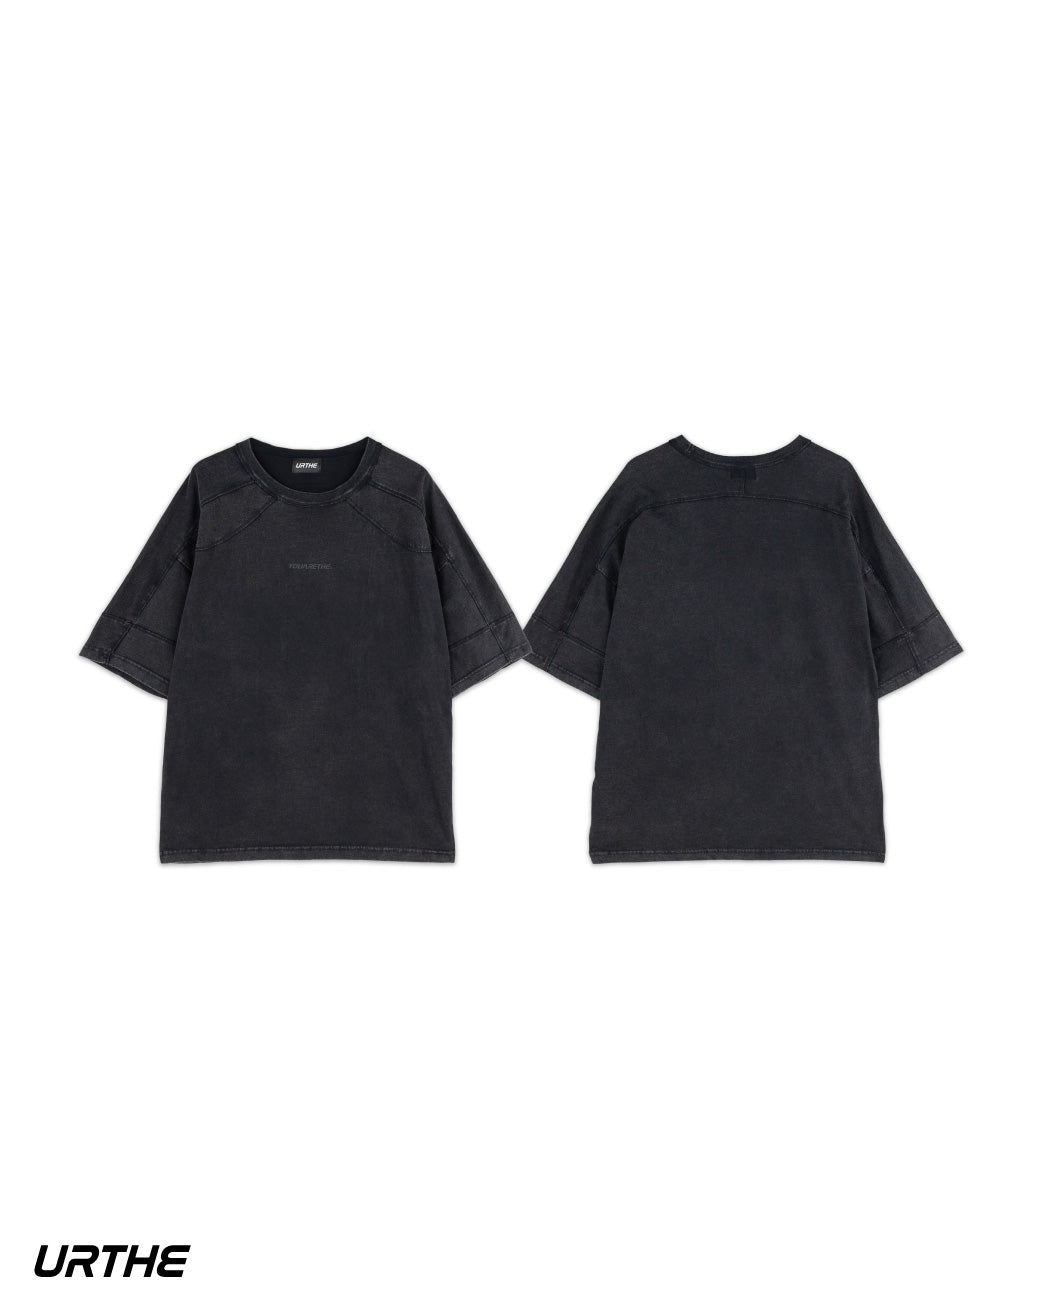 URTHE - เสื้อยืด เเขนสั้น ผ้าฟอก รุ่น MN CURV BOY / GIRL